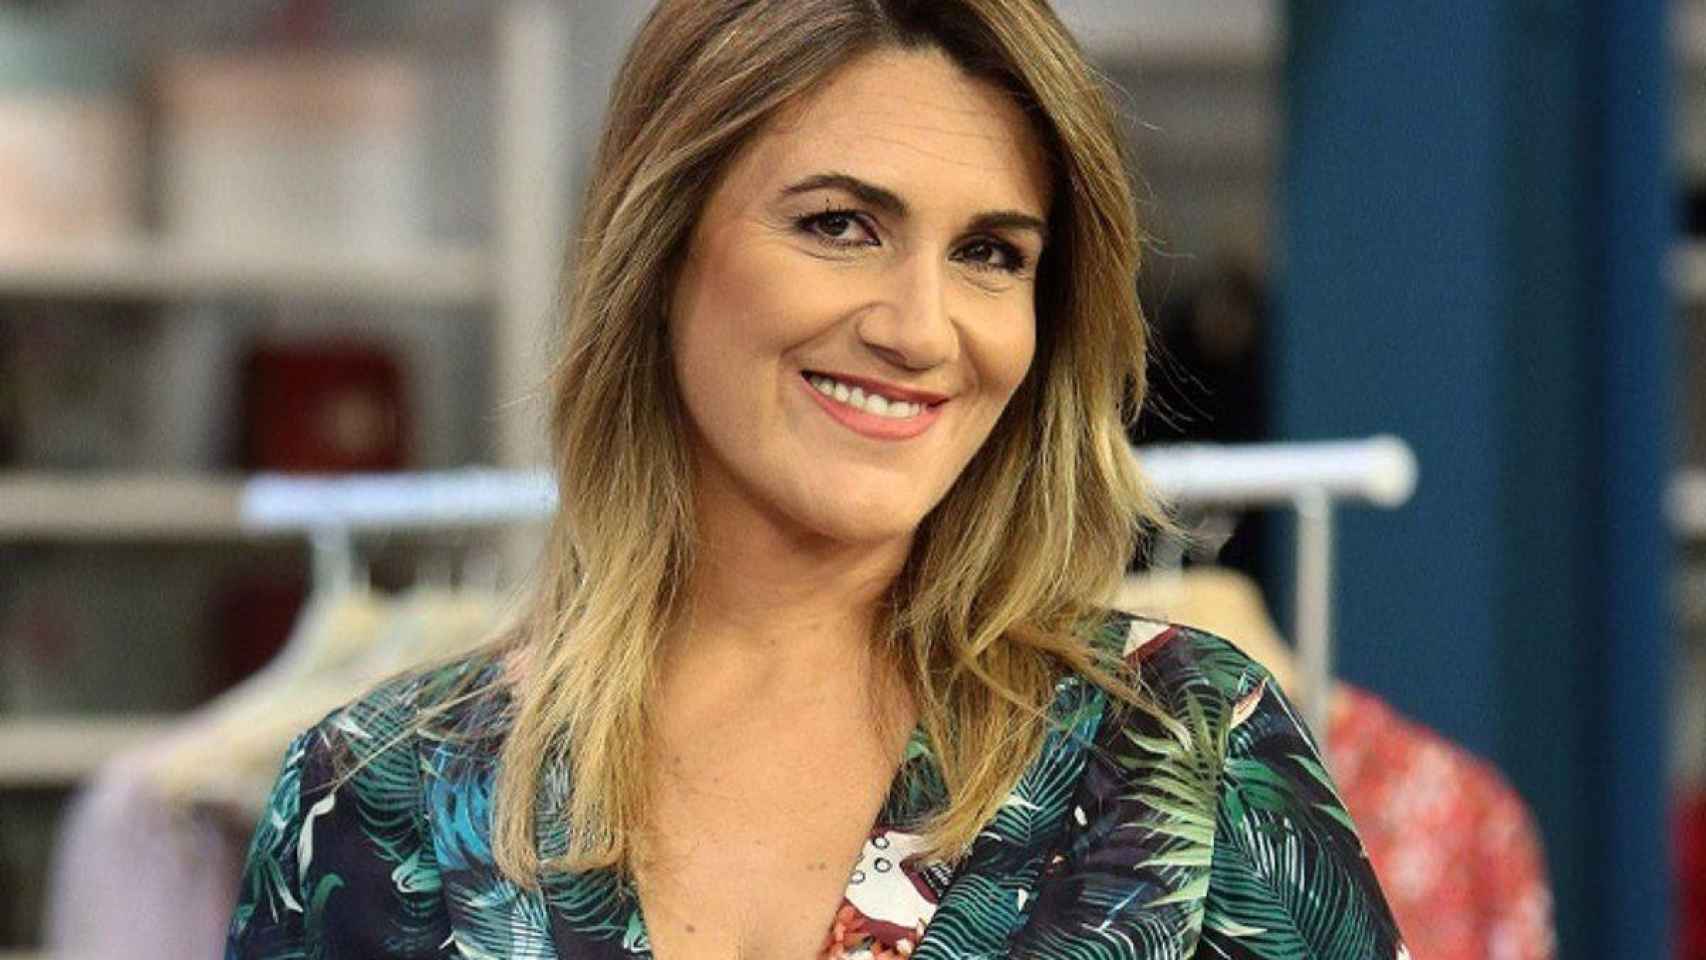 La presentadora Carlota Corredera, la sustituta de Jorge Javier Vázquez a lo largo de la semana / EP